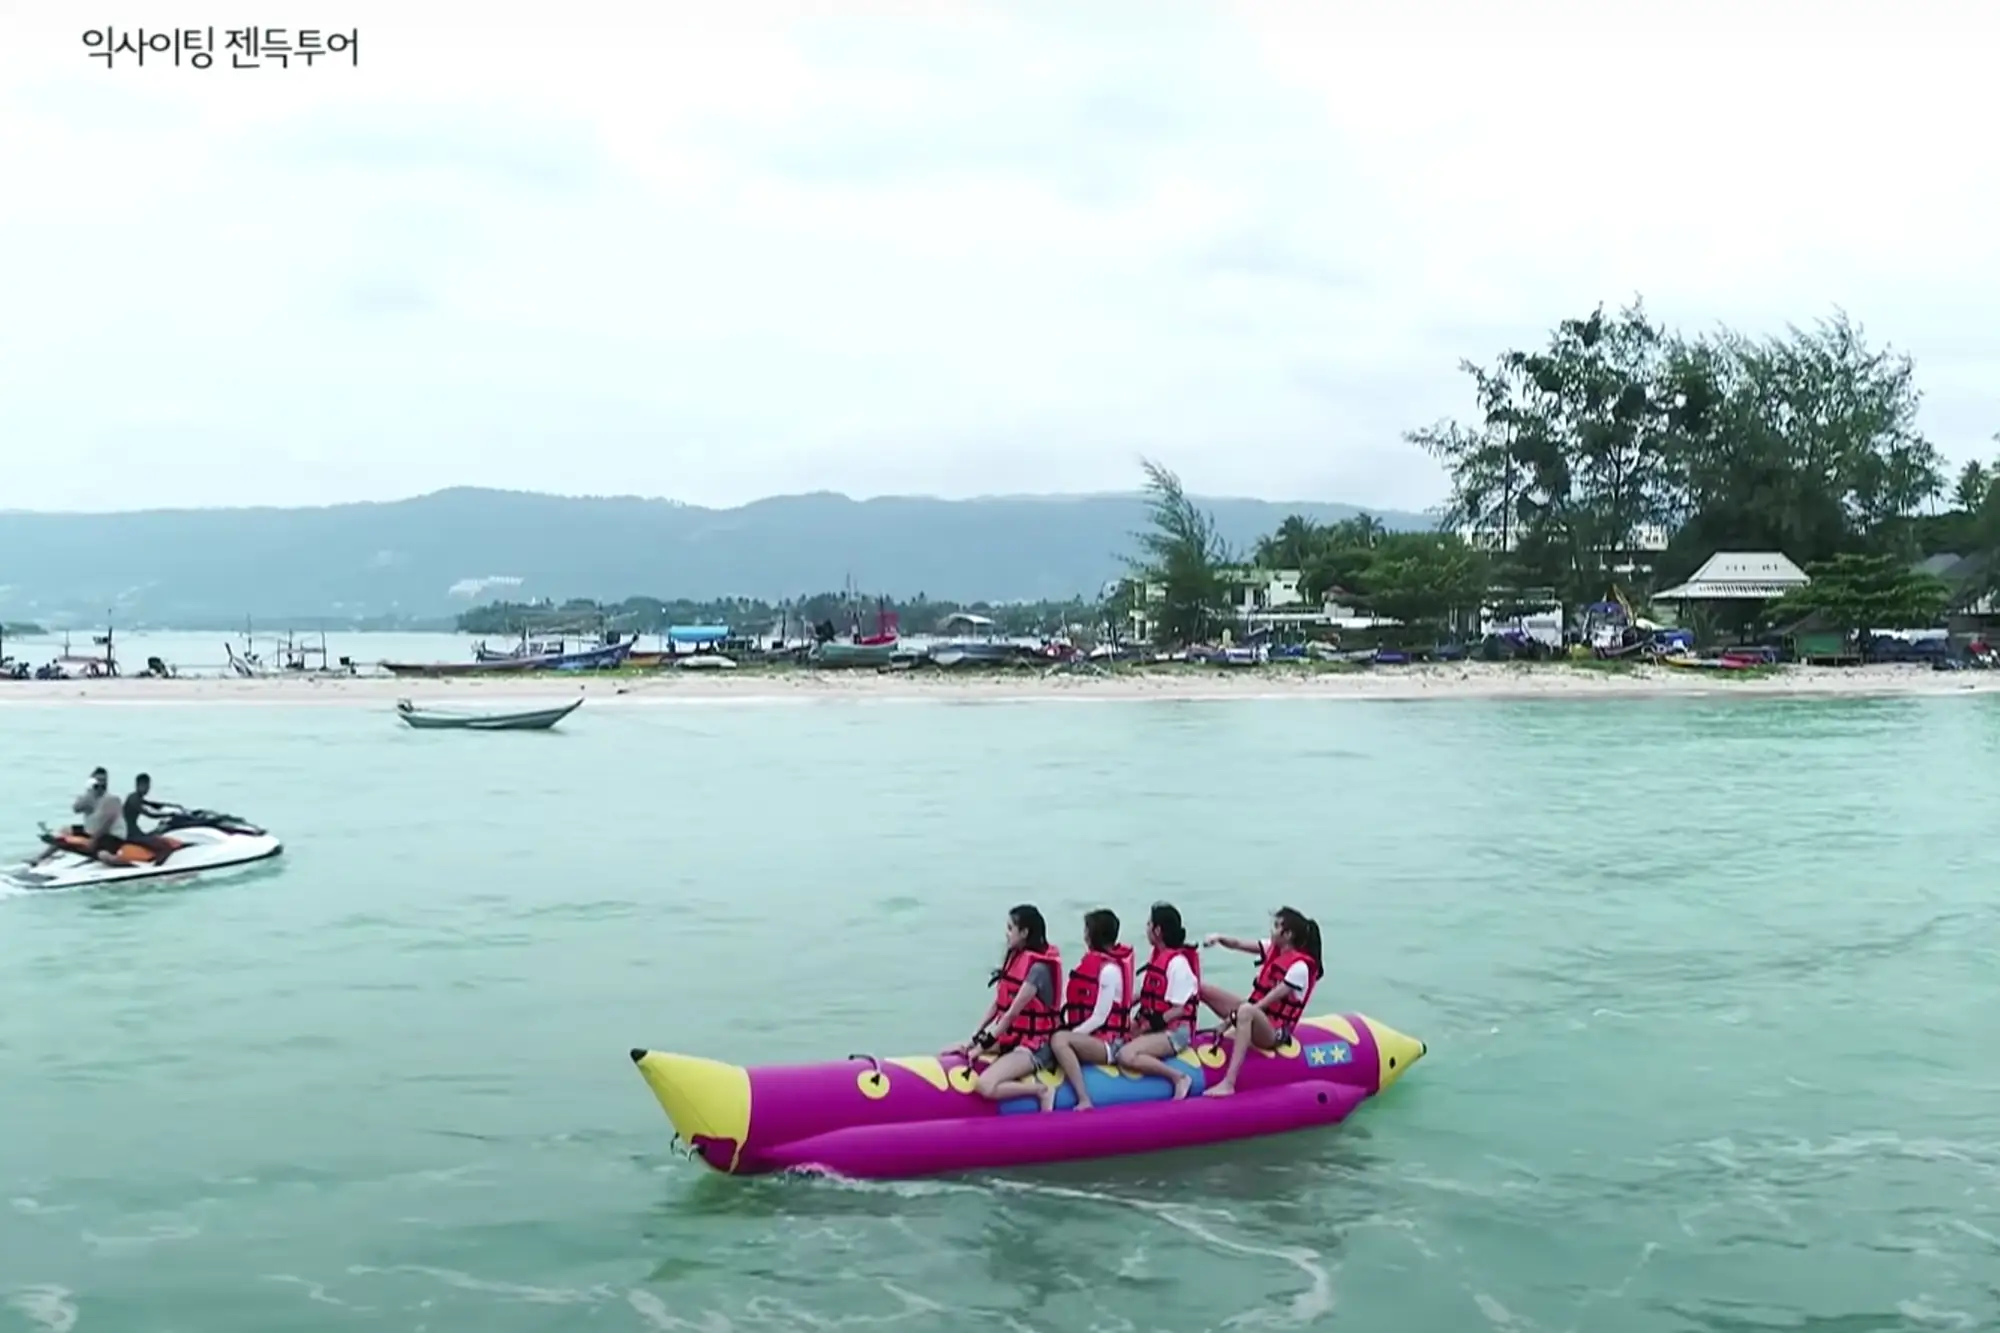 在蘇梅島，可以進行多樣的水上活動，如考驗力量速度的水上摩托、刺激而愜意的滑翔傘/拖拽傘、自由穿梭碧海的香蕉船等（Blackpink House影片截圖）